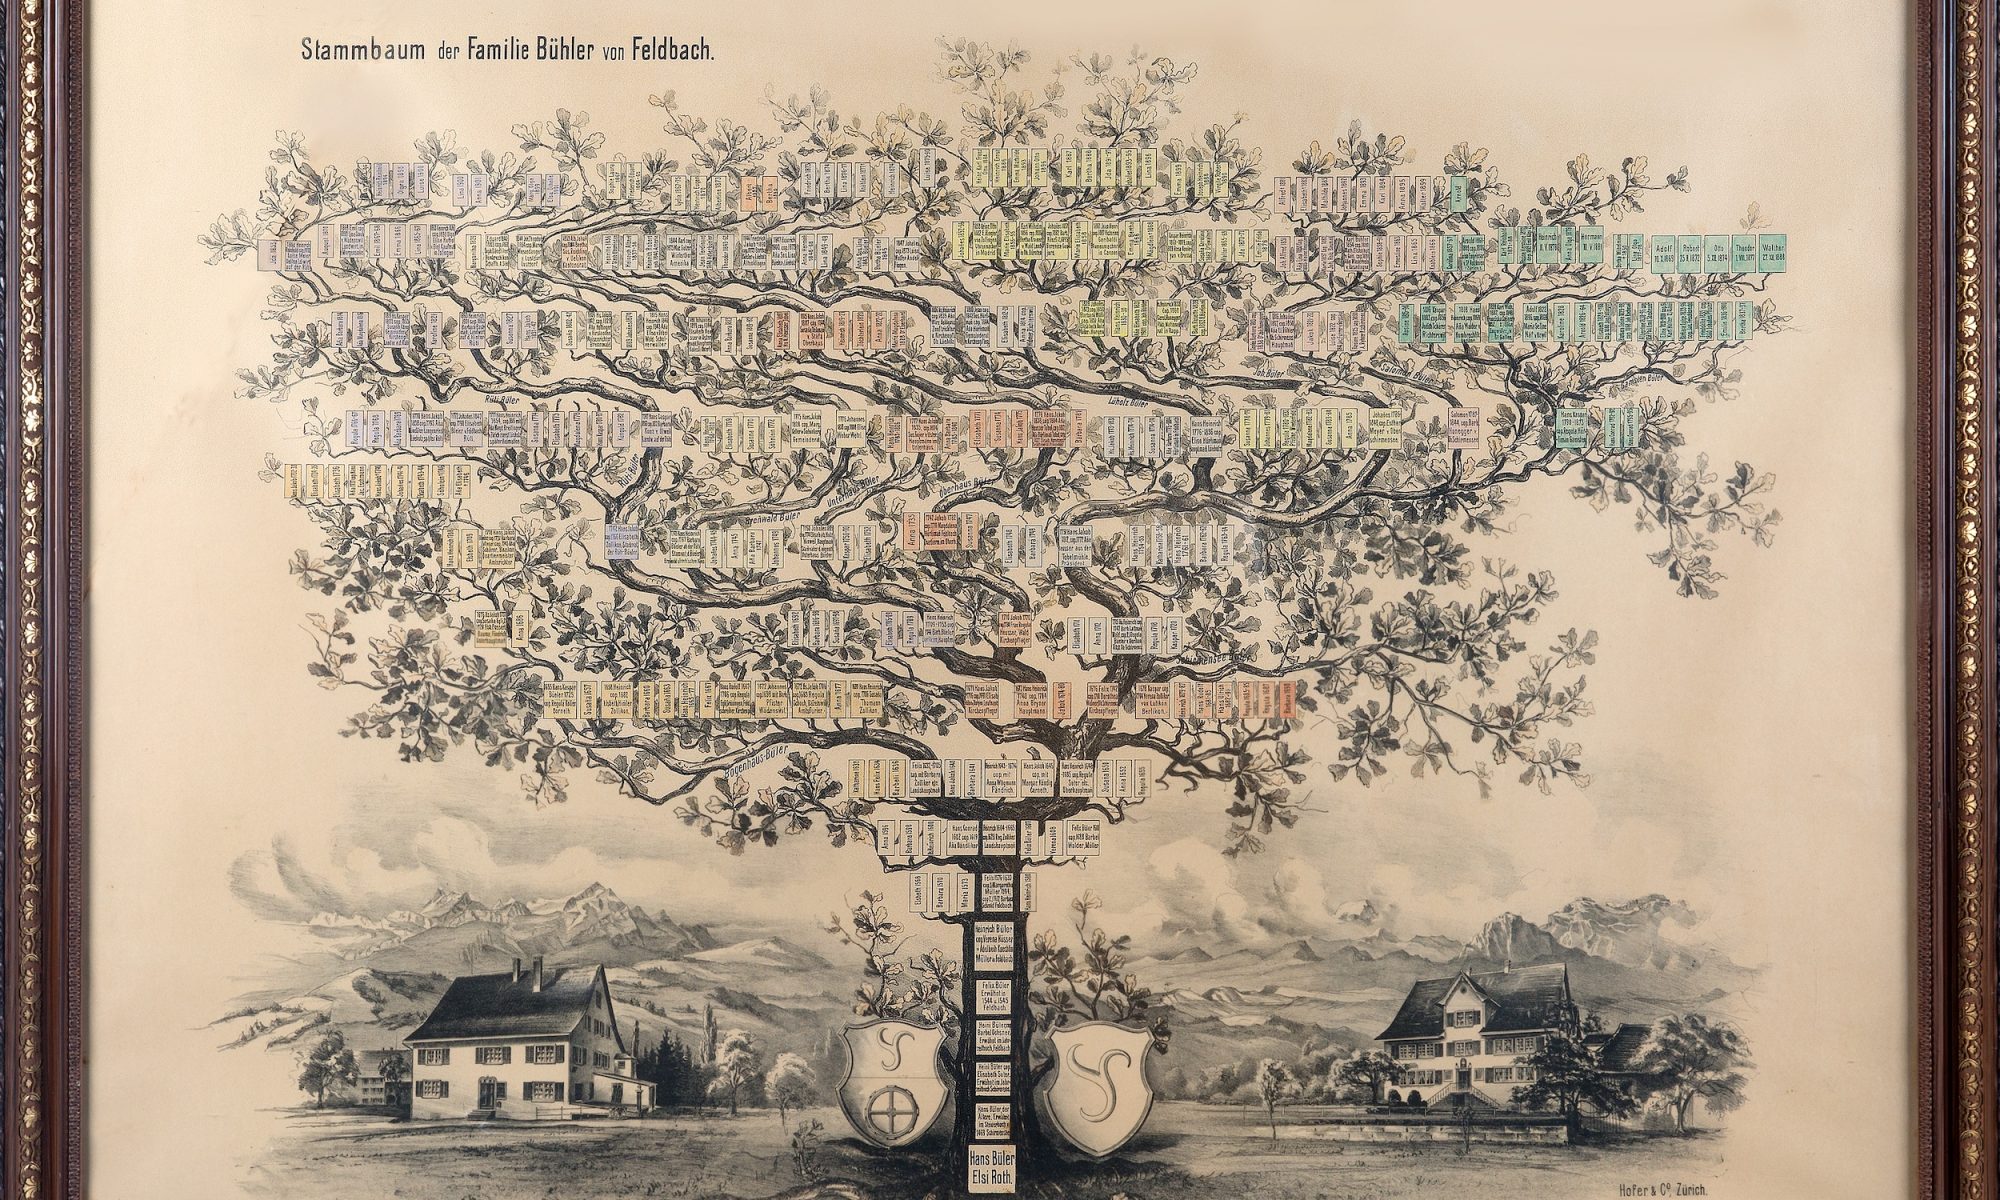 Stammbaum der Familie Bühler, als Baum gezeichnet, mit Namenstäfelchen zu den einzelnen Personen